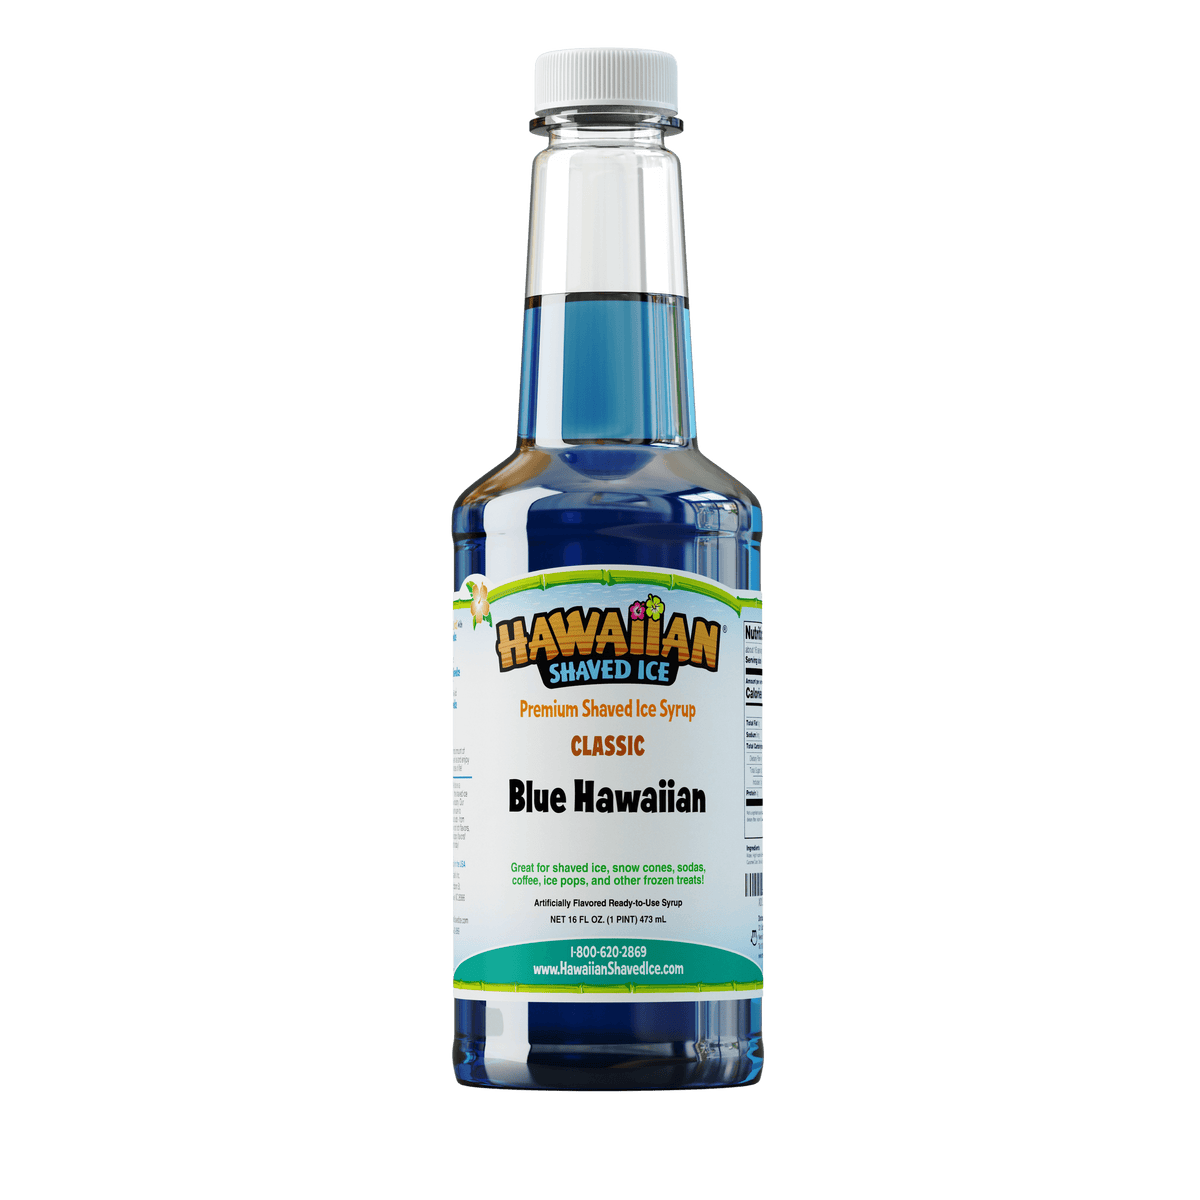 A pint (16-oz) of Hawaiian Shaved Ice Blue Hawaiian Flavored syrup, Blue